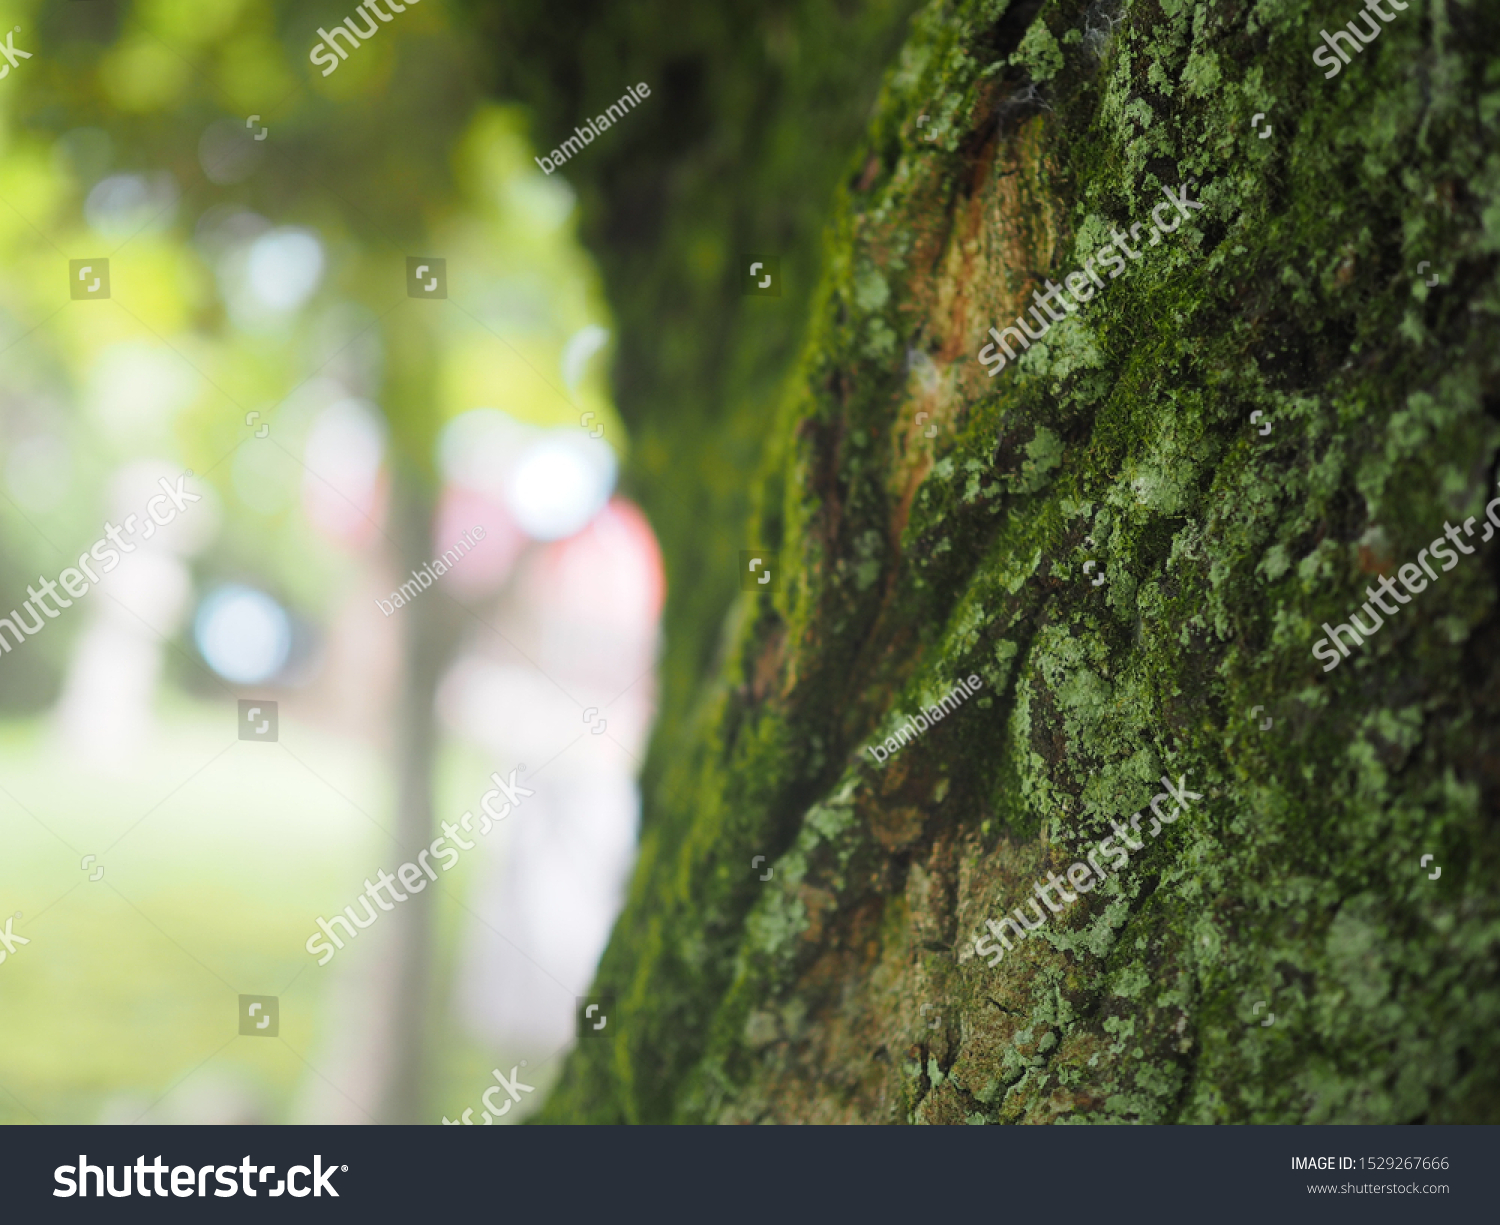 mossy tree trunk in sunlights #1529267666